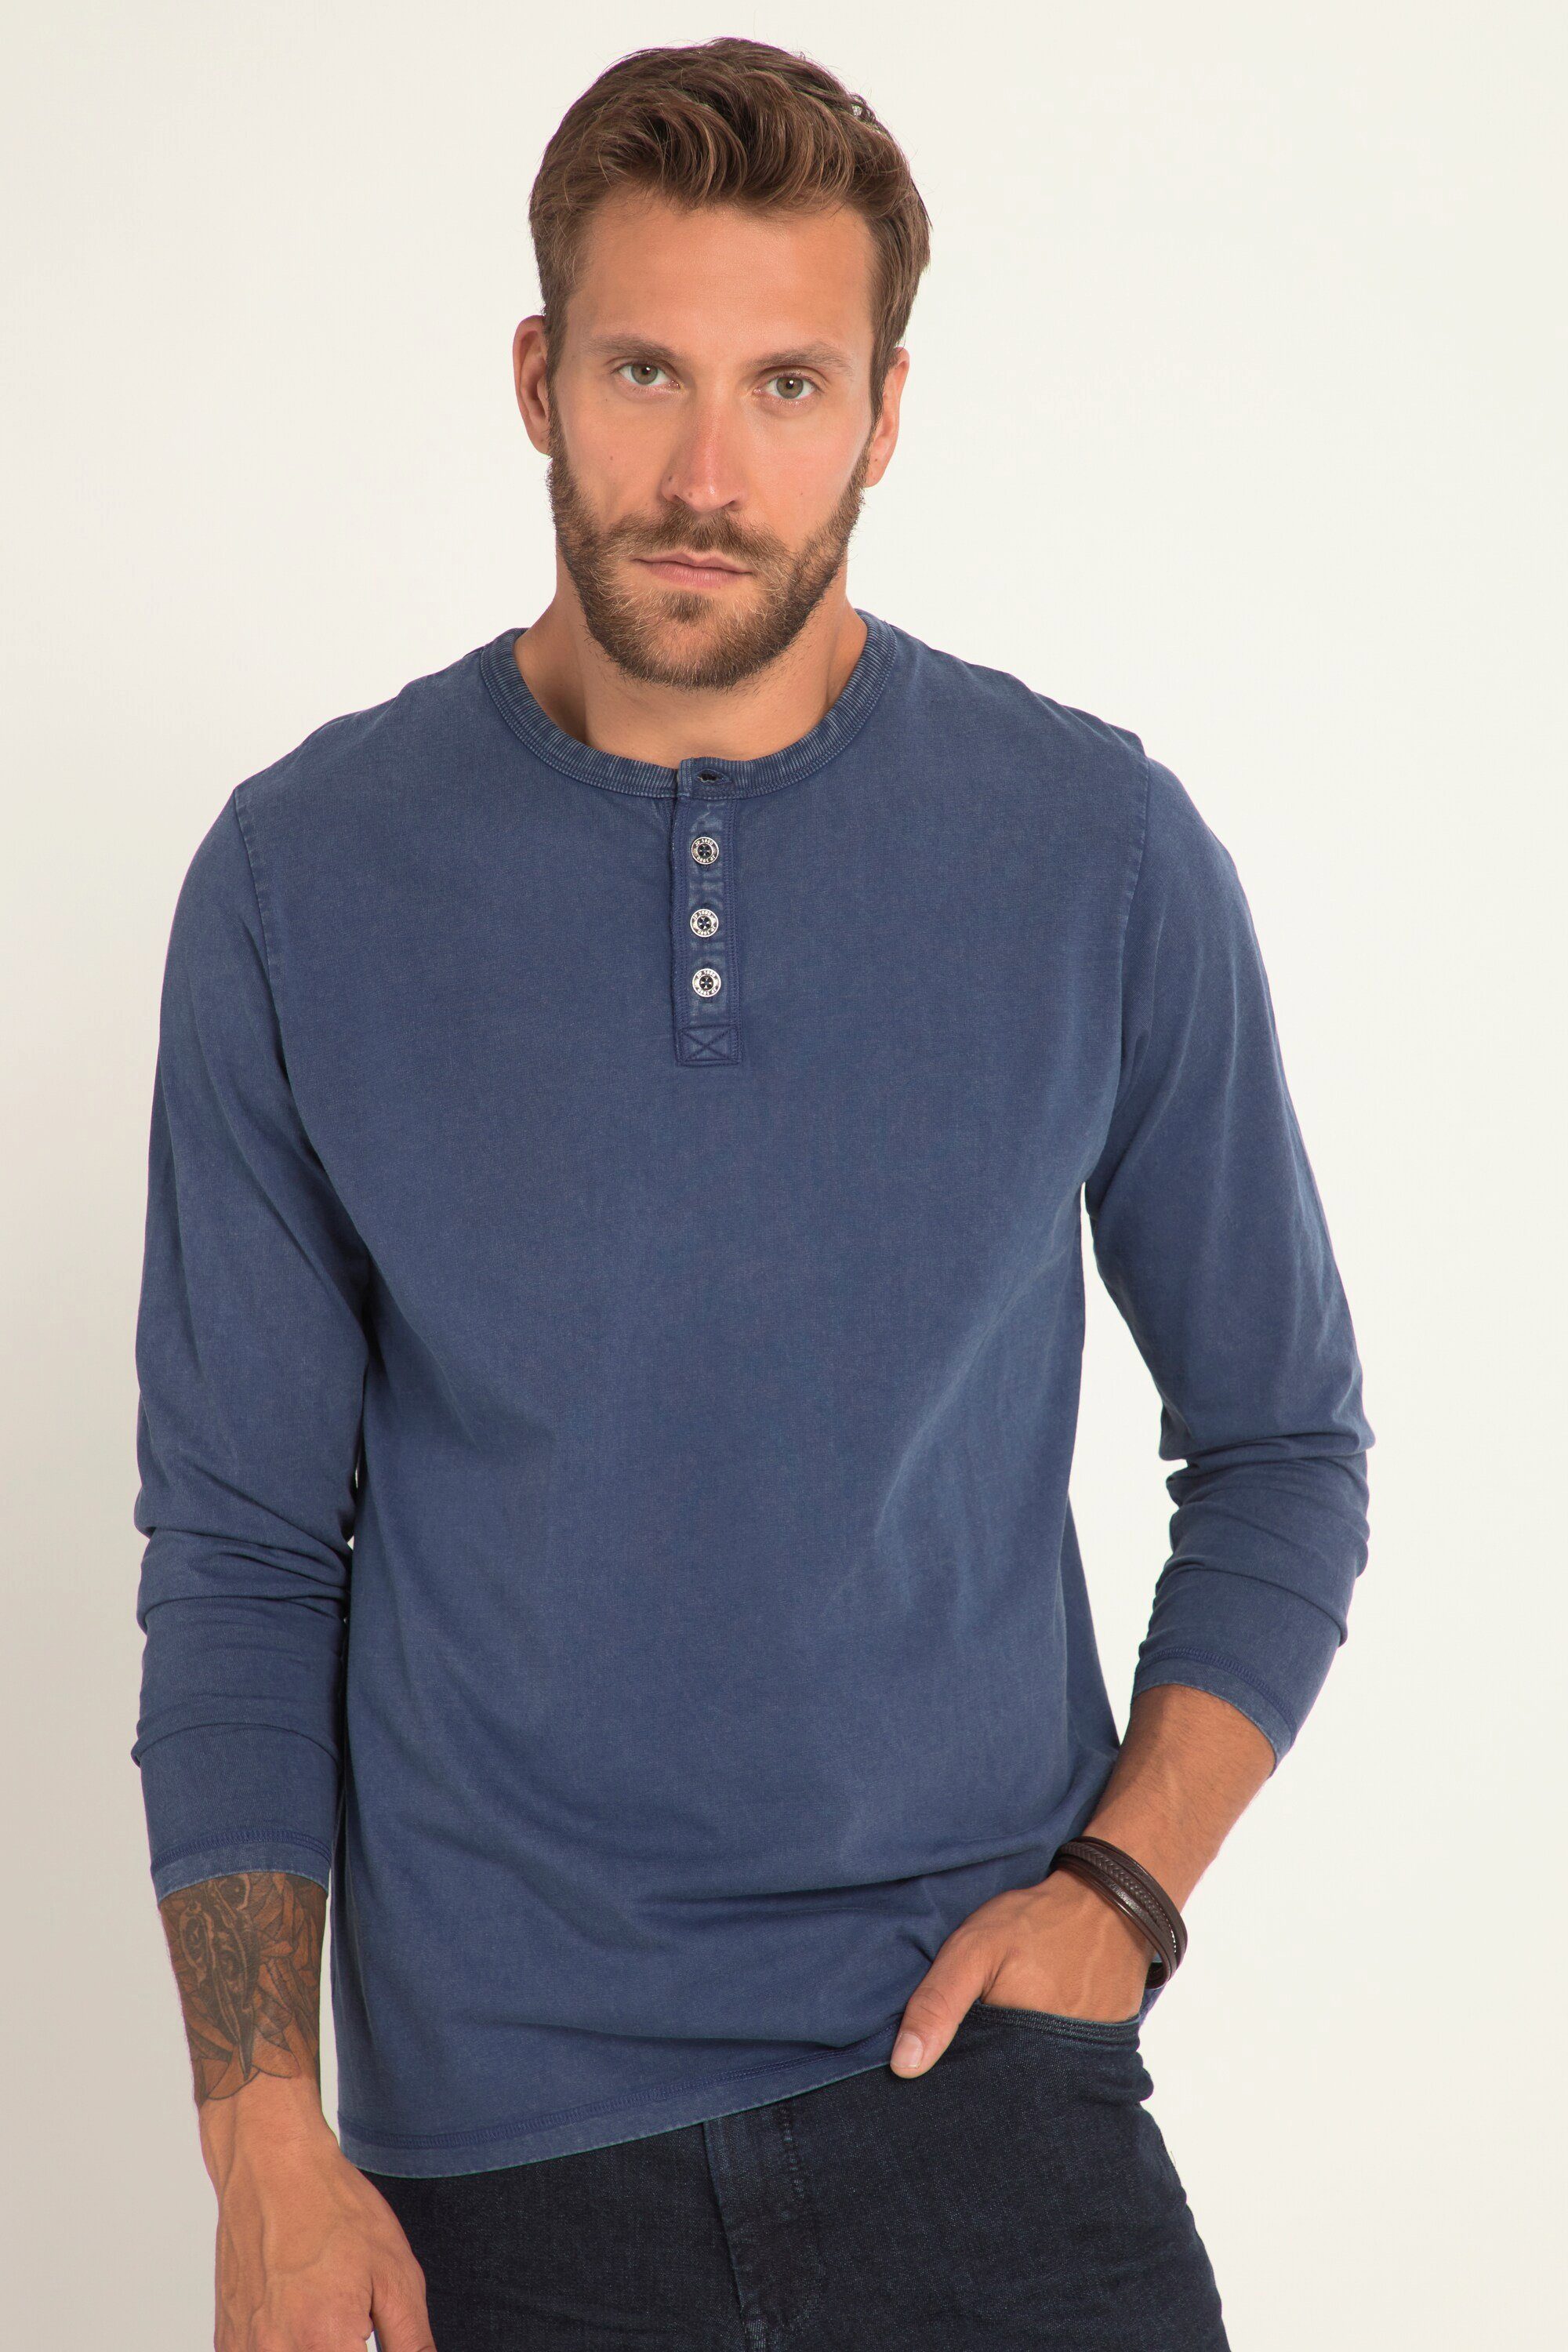 JP1880 T-Shirt Henley Langarm Vintage Look Rundhals Knopfleiste tiefblau